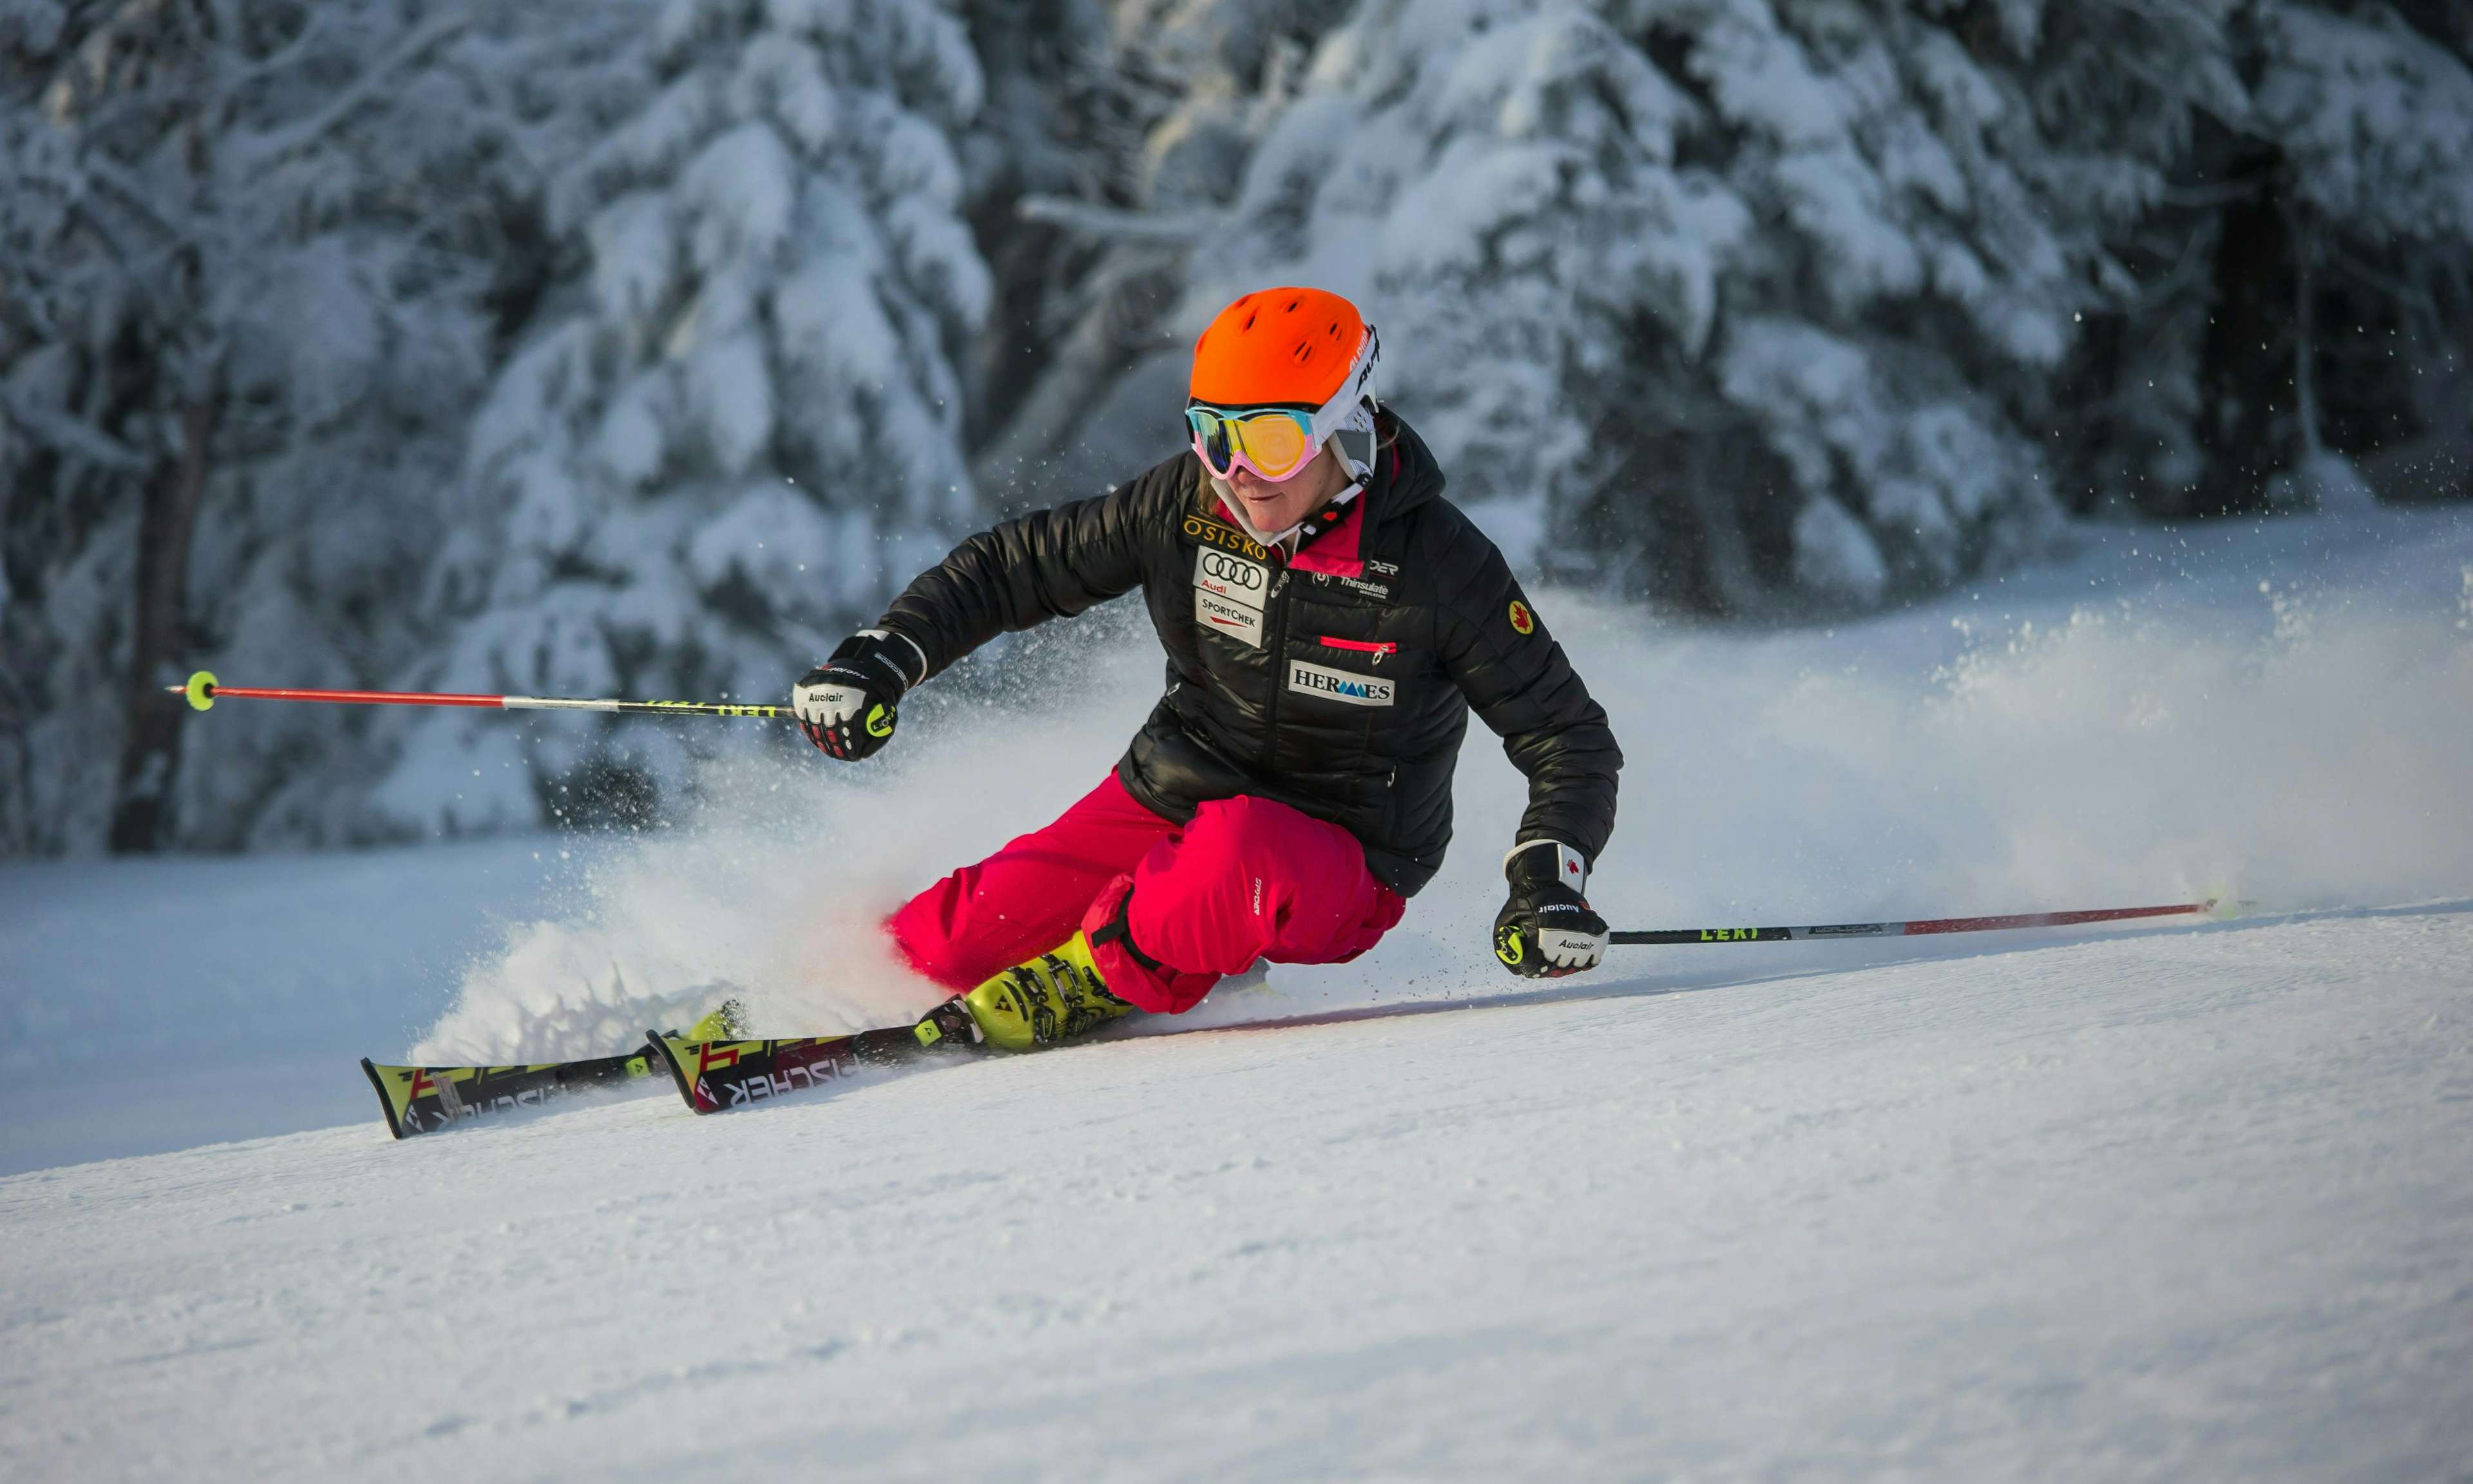 Skier Brittany Phelan